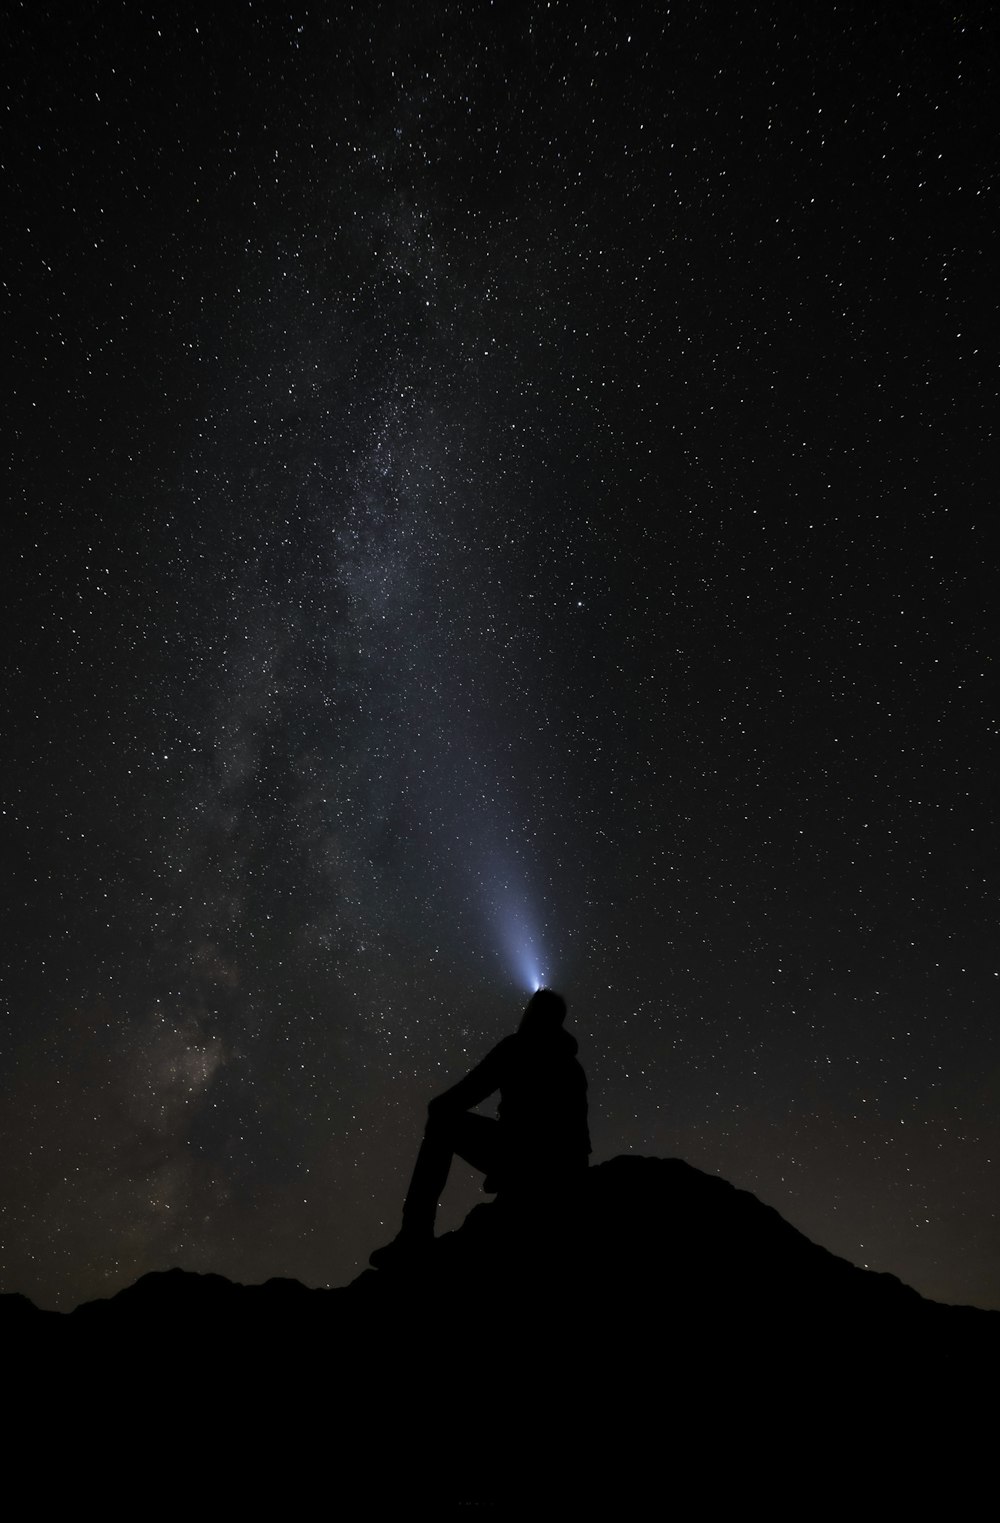 Eine Person, die auf einem Berg sitzt und die Sterne am Himmel betrachtet